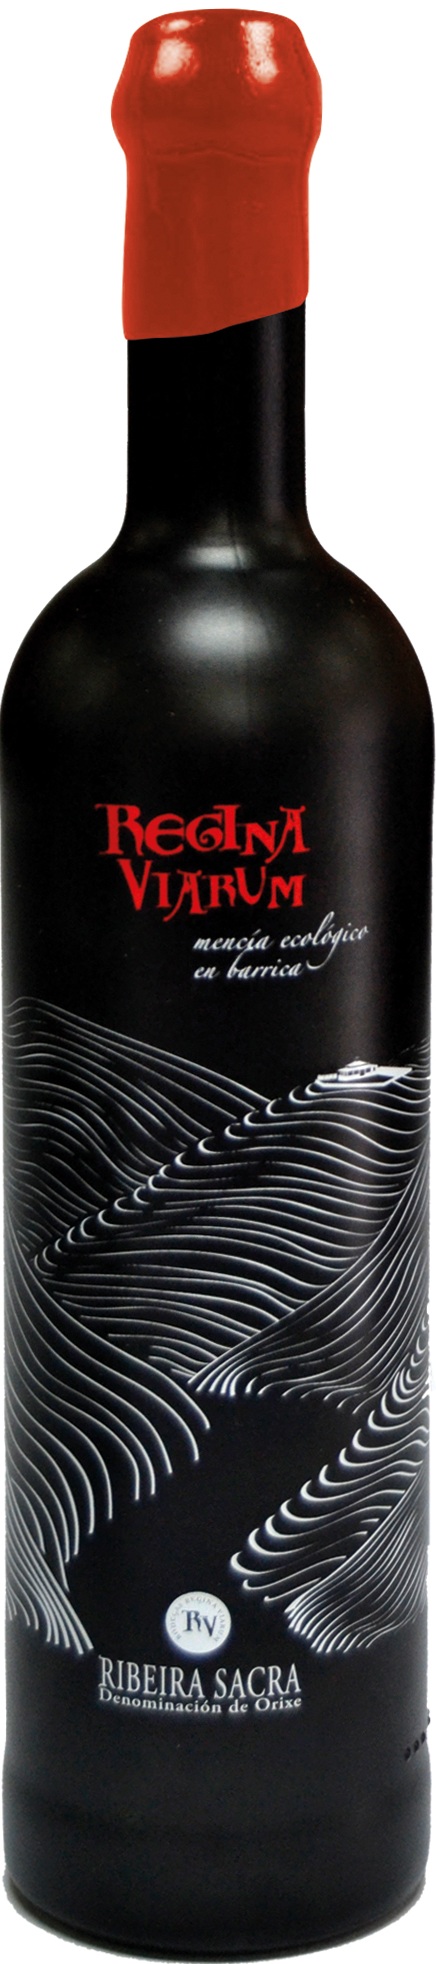 Logo del vino Regina Viarum Mencía Ecológico en barrica